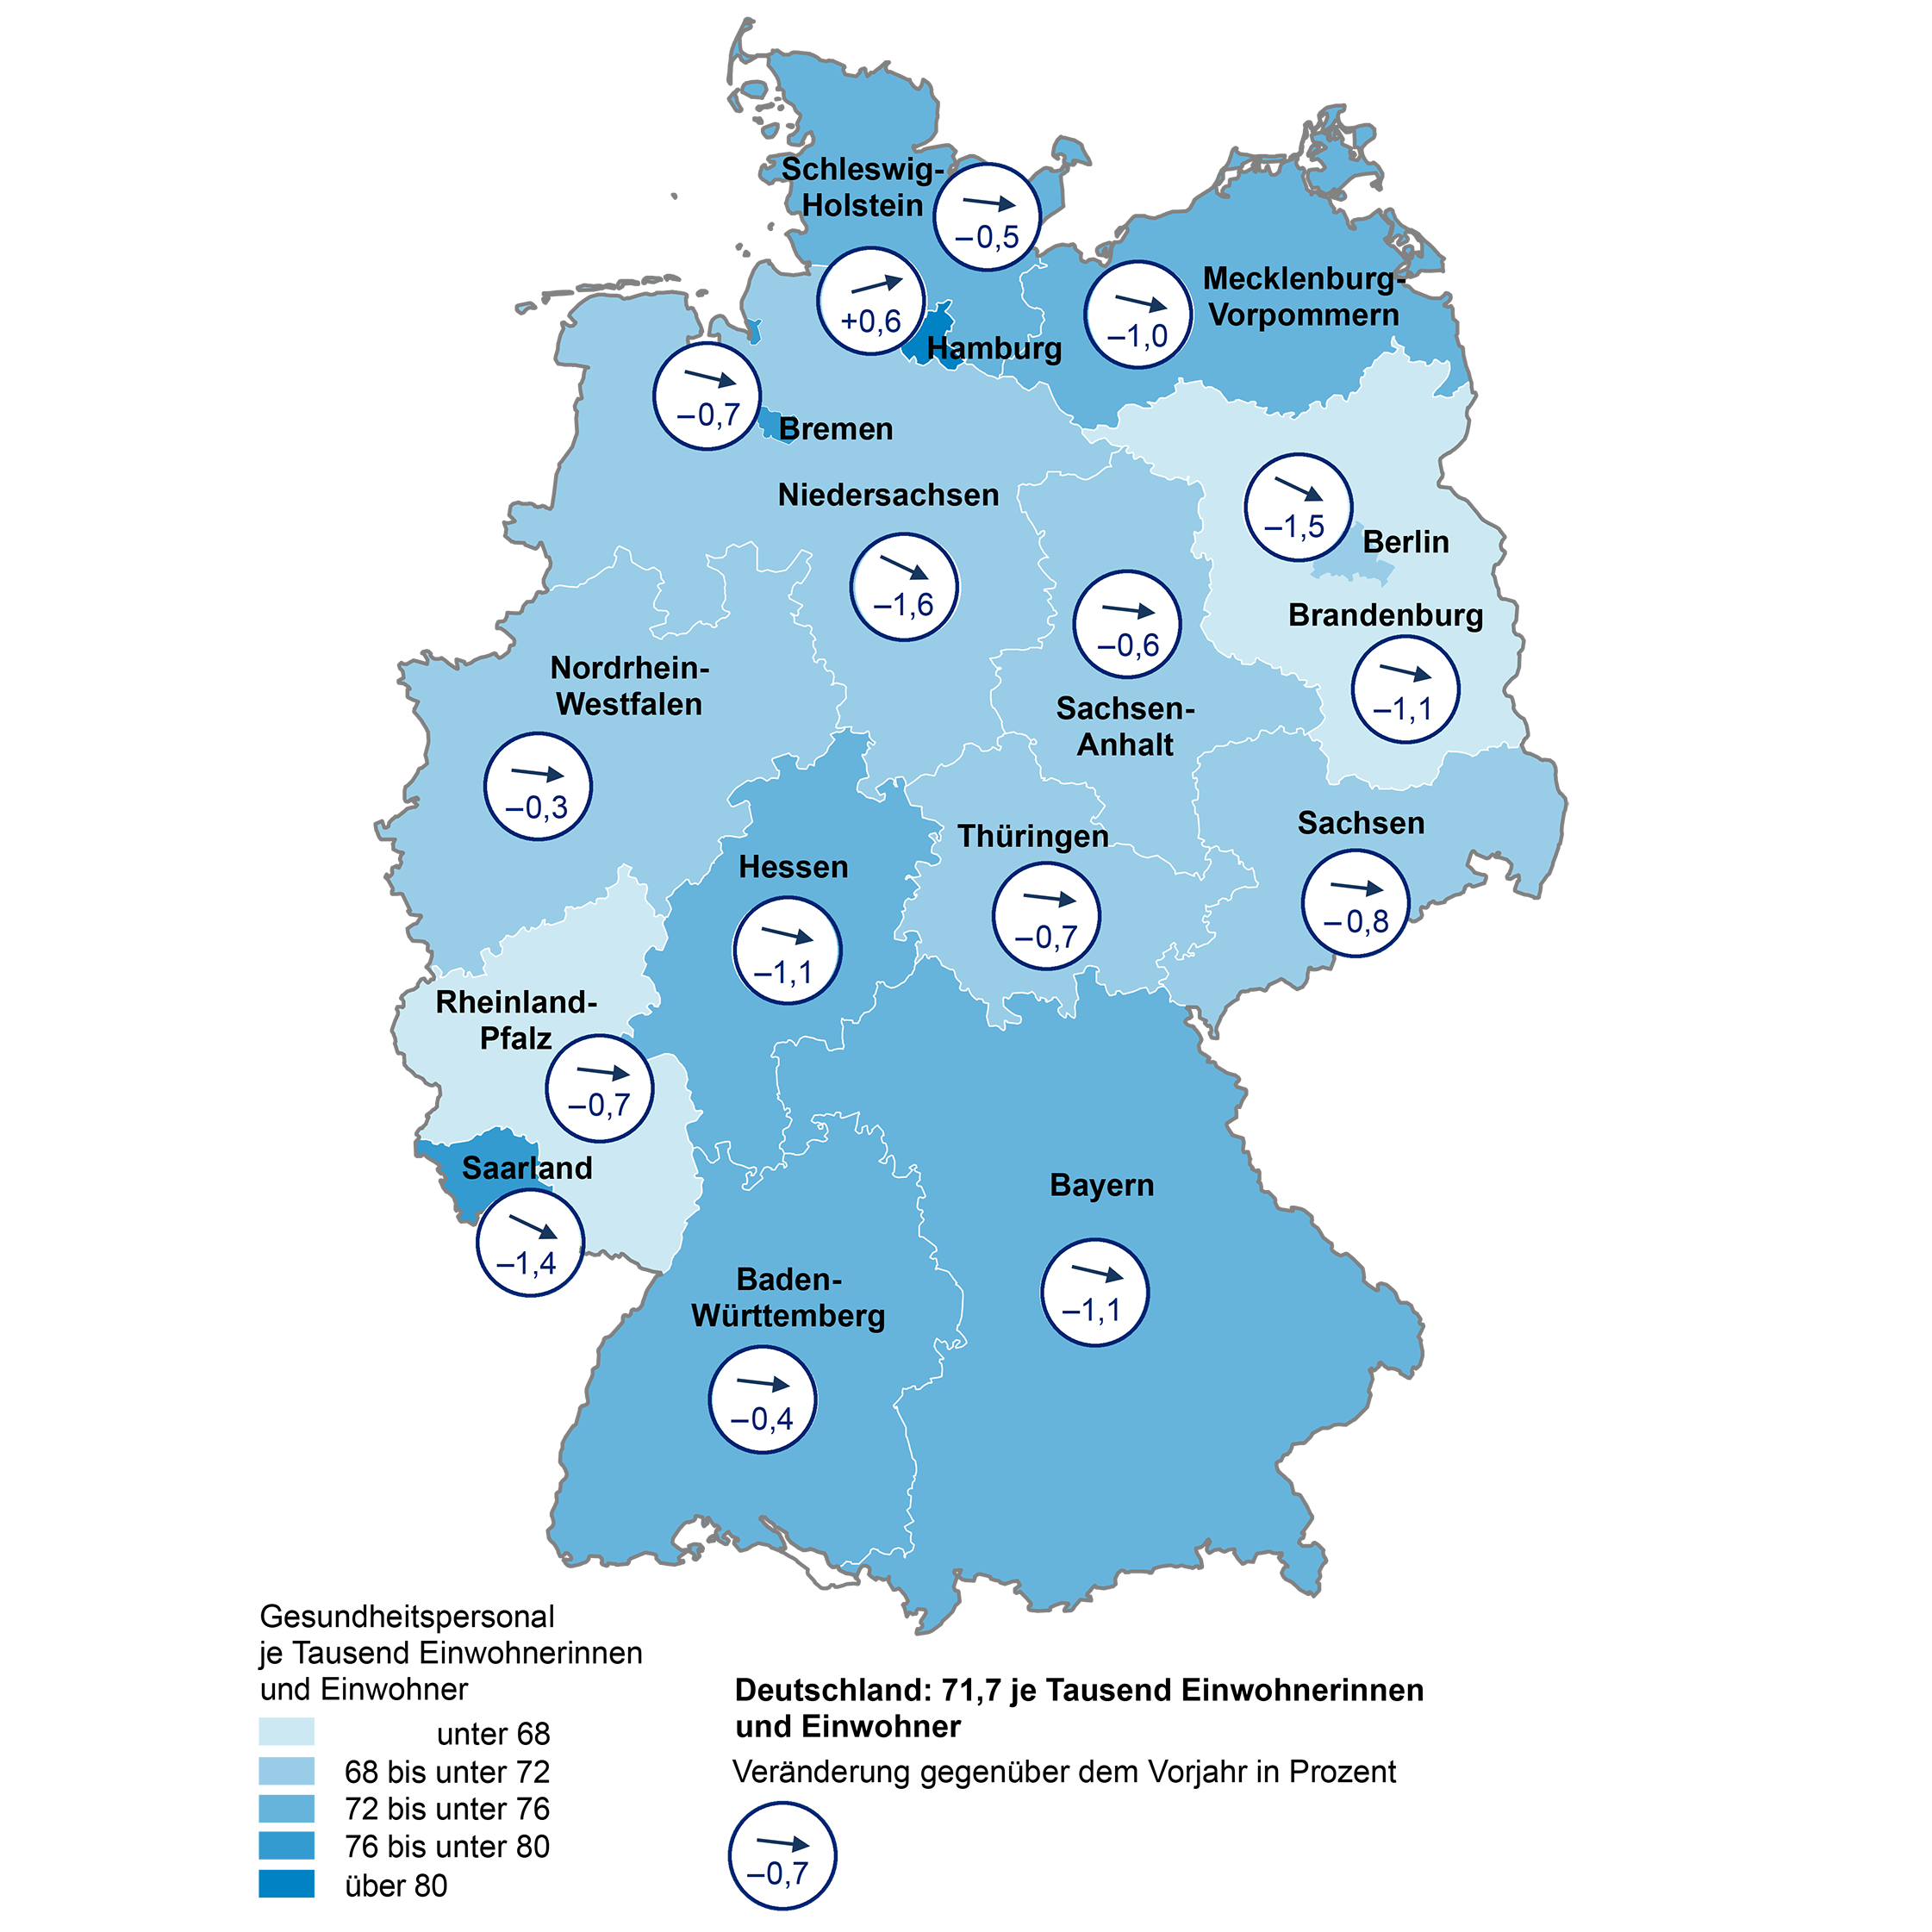 In dieser Deutschlandkarte wird das Gesundheitspersonal im Jahr 2022 bezogen auf 1000 Einwohnerinnen und Einwohner sowie die Veränderung gegenüber dem Vorjahr dargestellt.